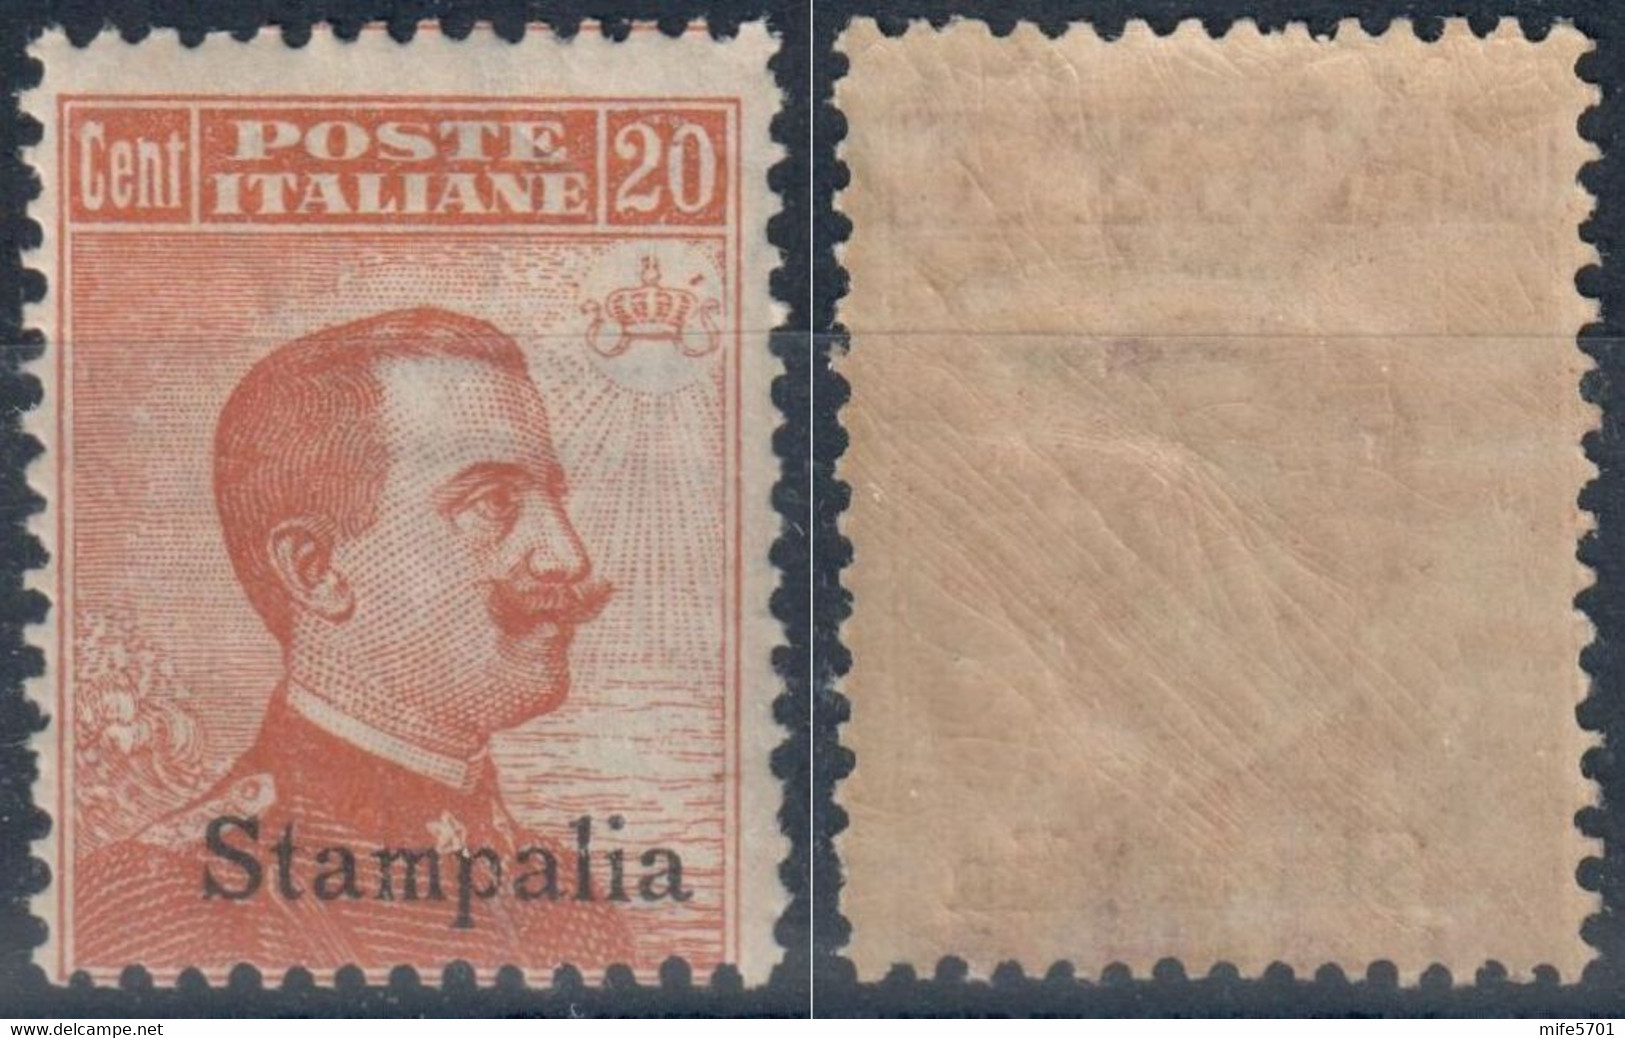 REGNO D'ITALIA / COLONIA STAMPALIA - 1922 - C. 20 ARANCIO - CATALOGO SASSONE NUMERO 11 FRESCHISSIMO - NUOVO / MNH / ** - Egée (Stampalia)